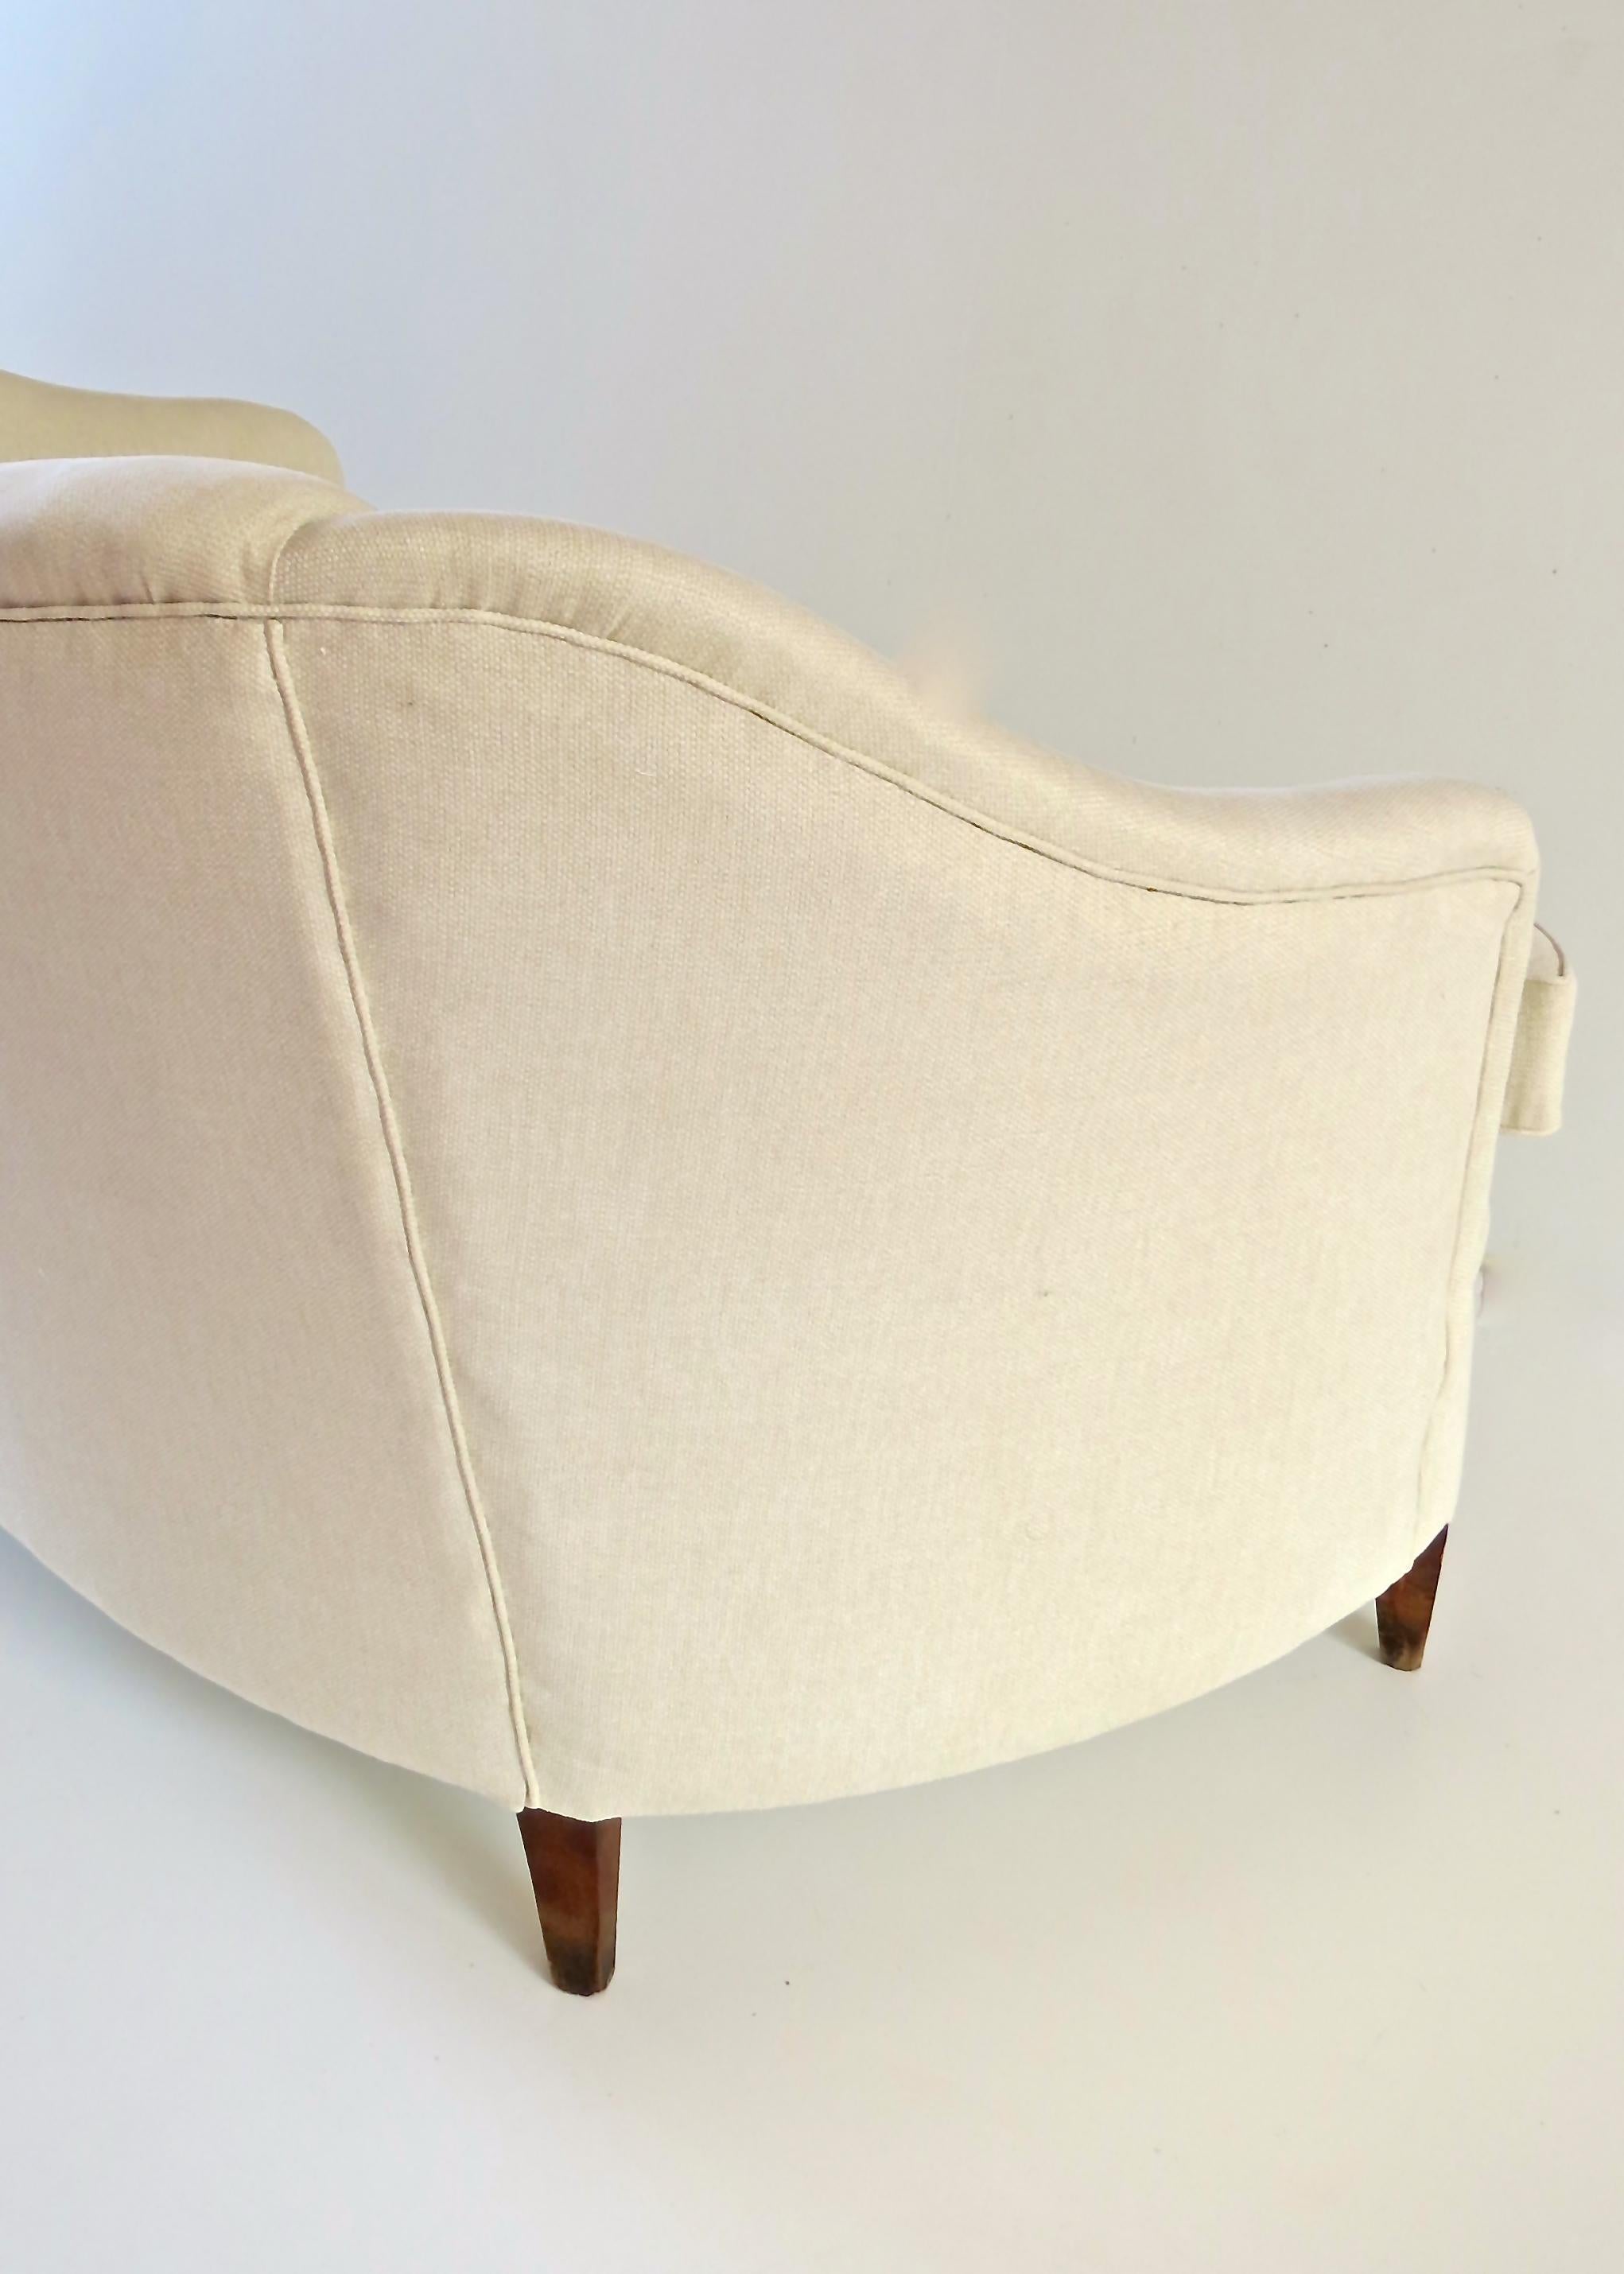 Gio Ponti White Sofa from Casa & Giardino, circa 1938 For Sale 4